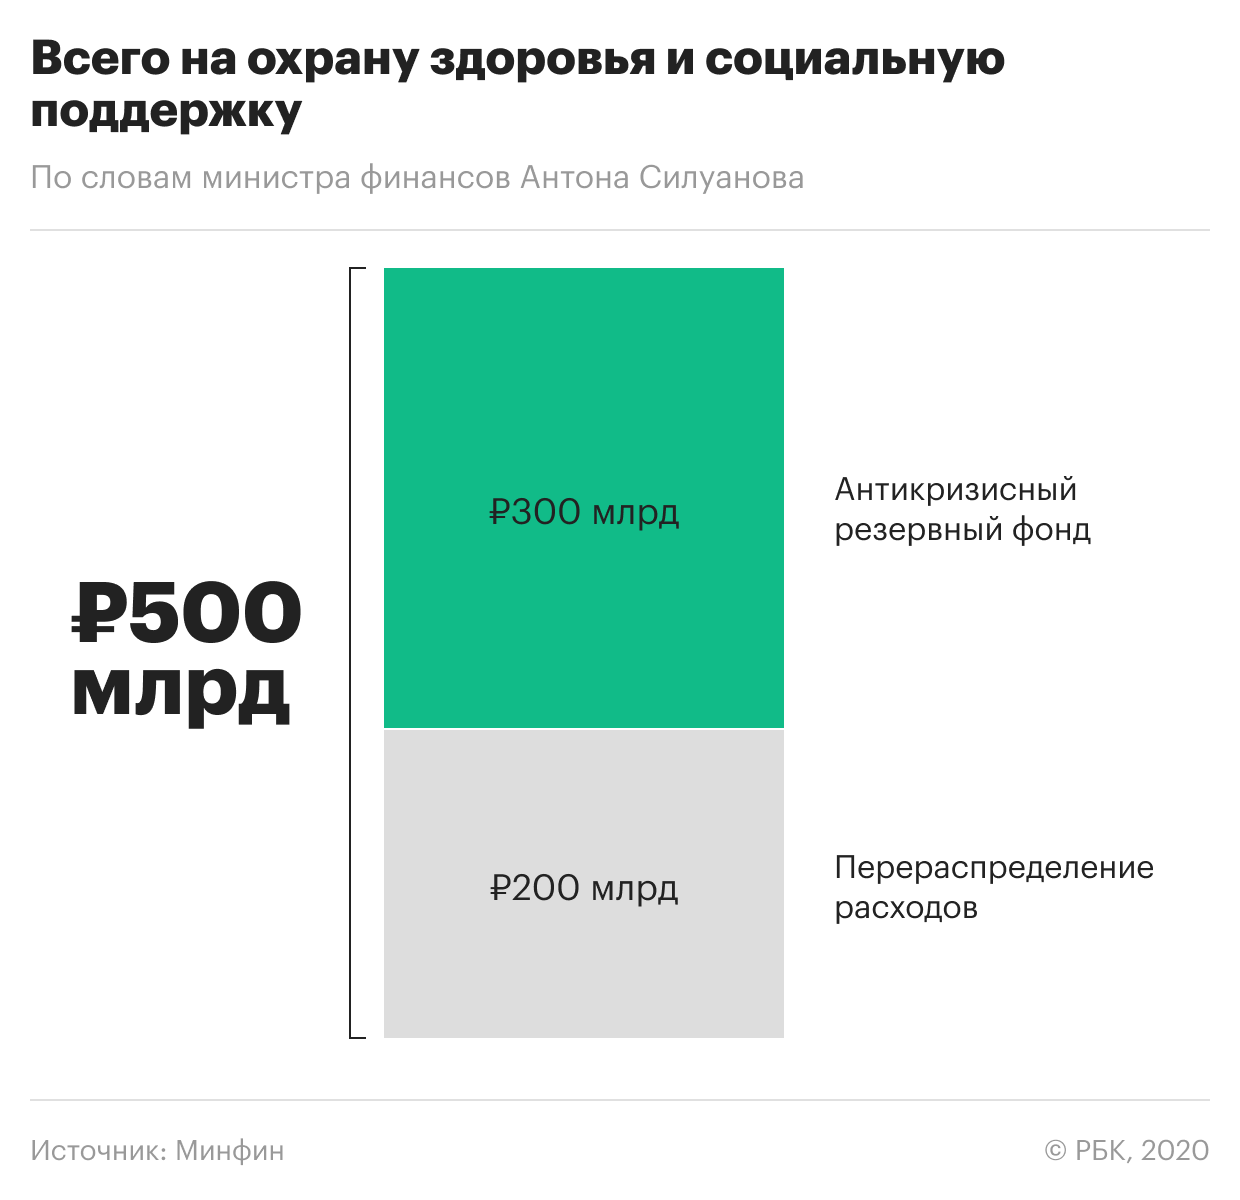 Сколько денег российские власти направят на борьбу с кризисом